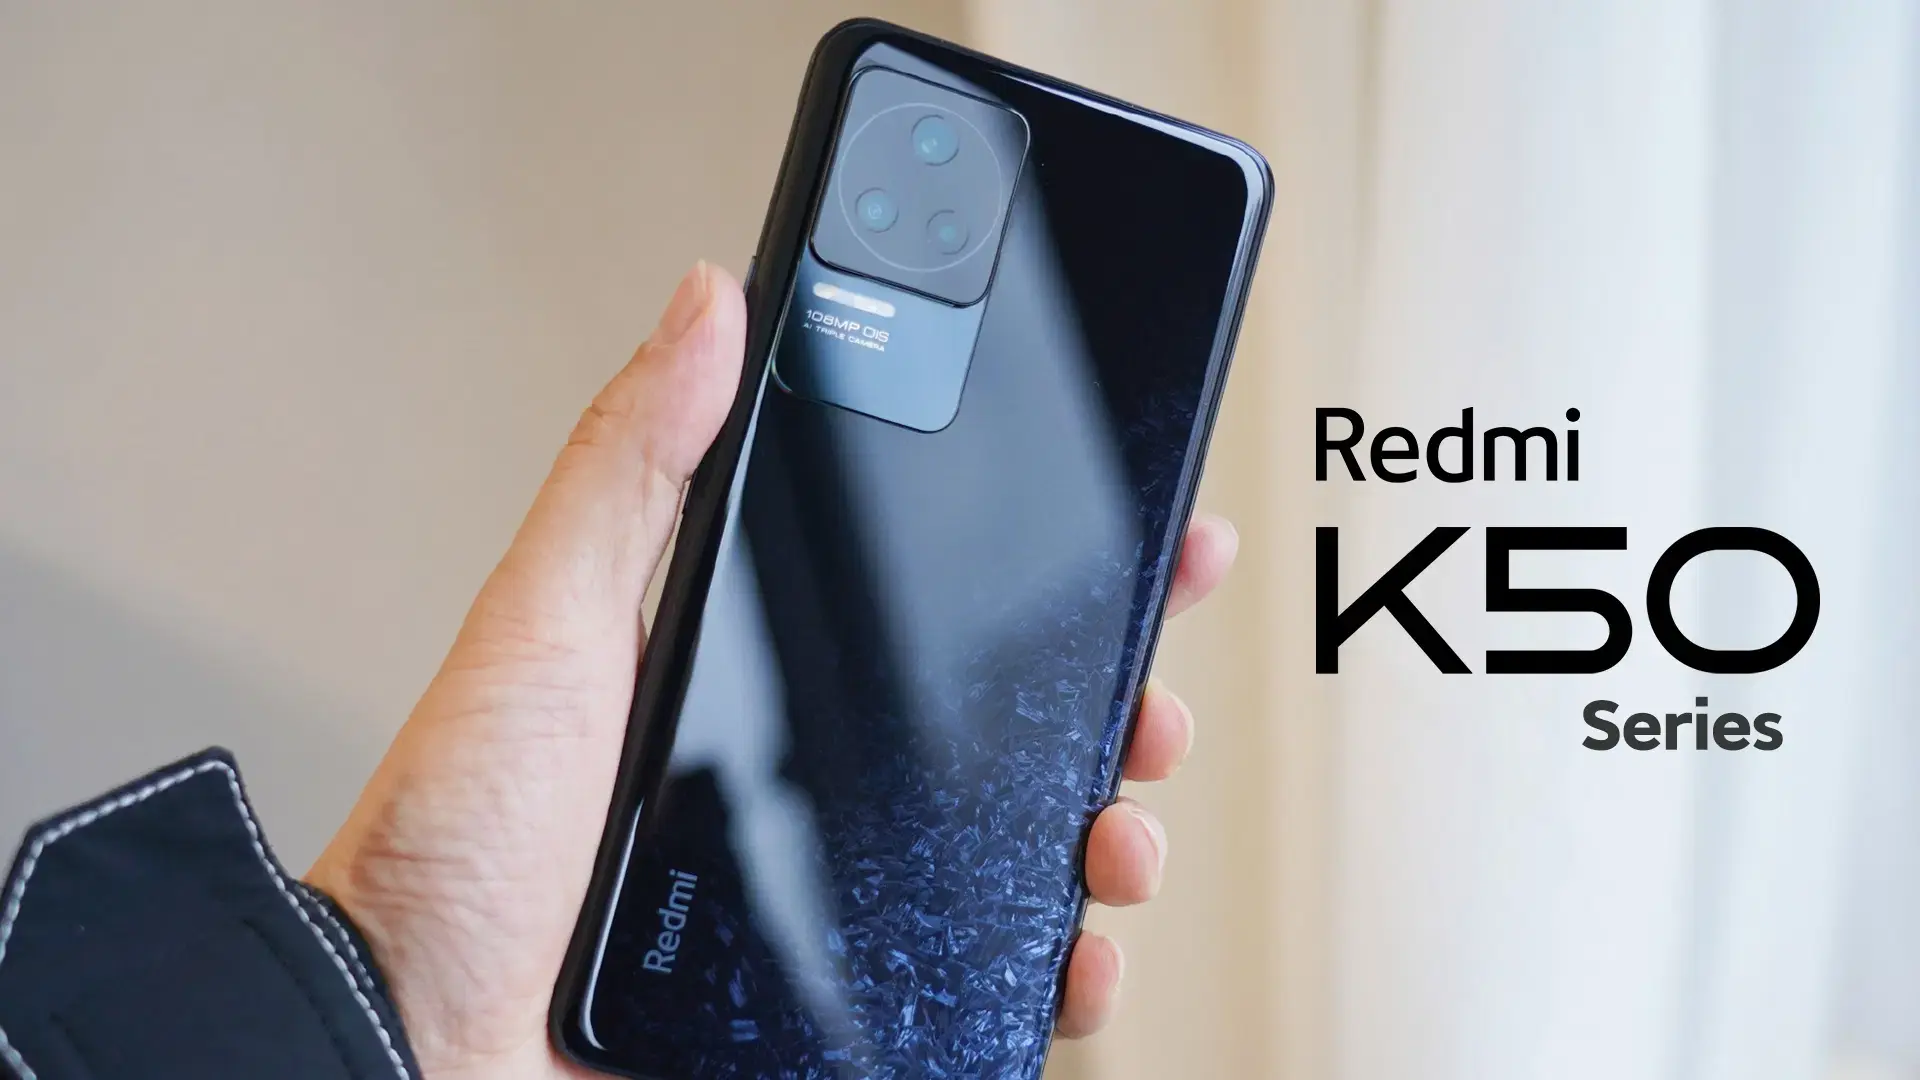 Xiaomi redmi k70 pro цены